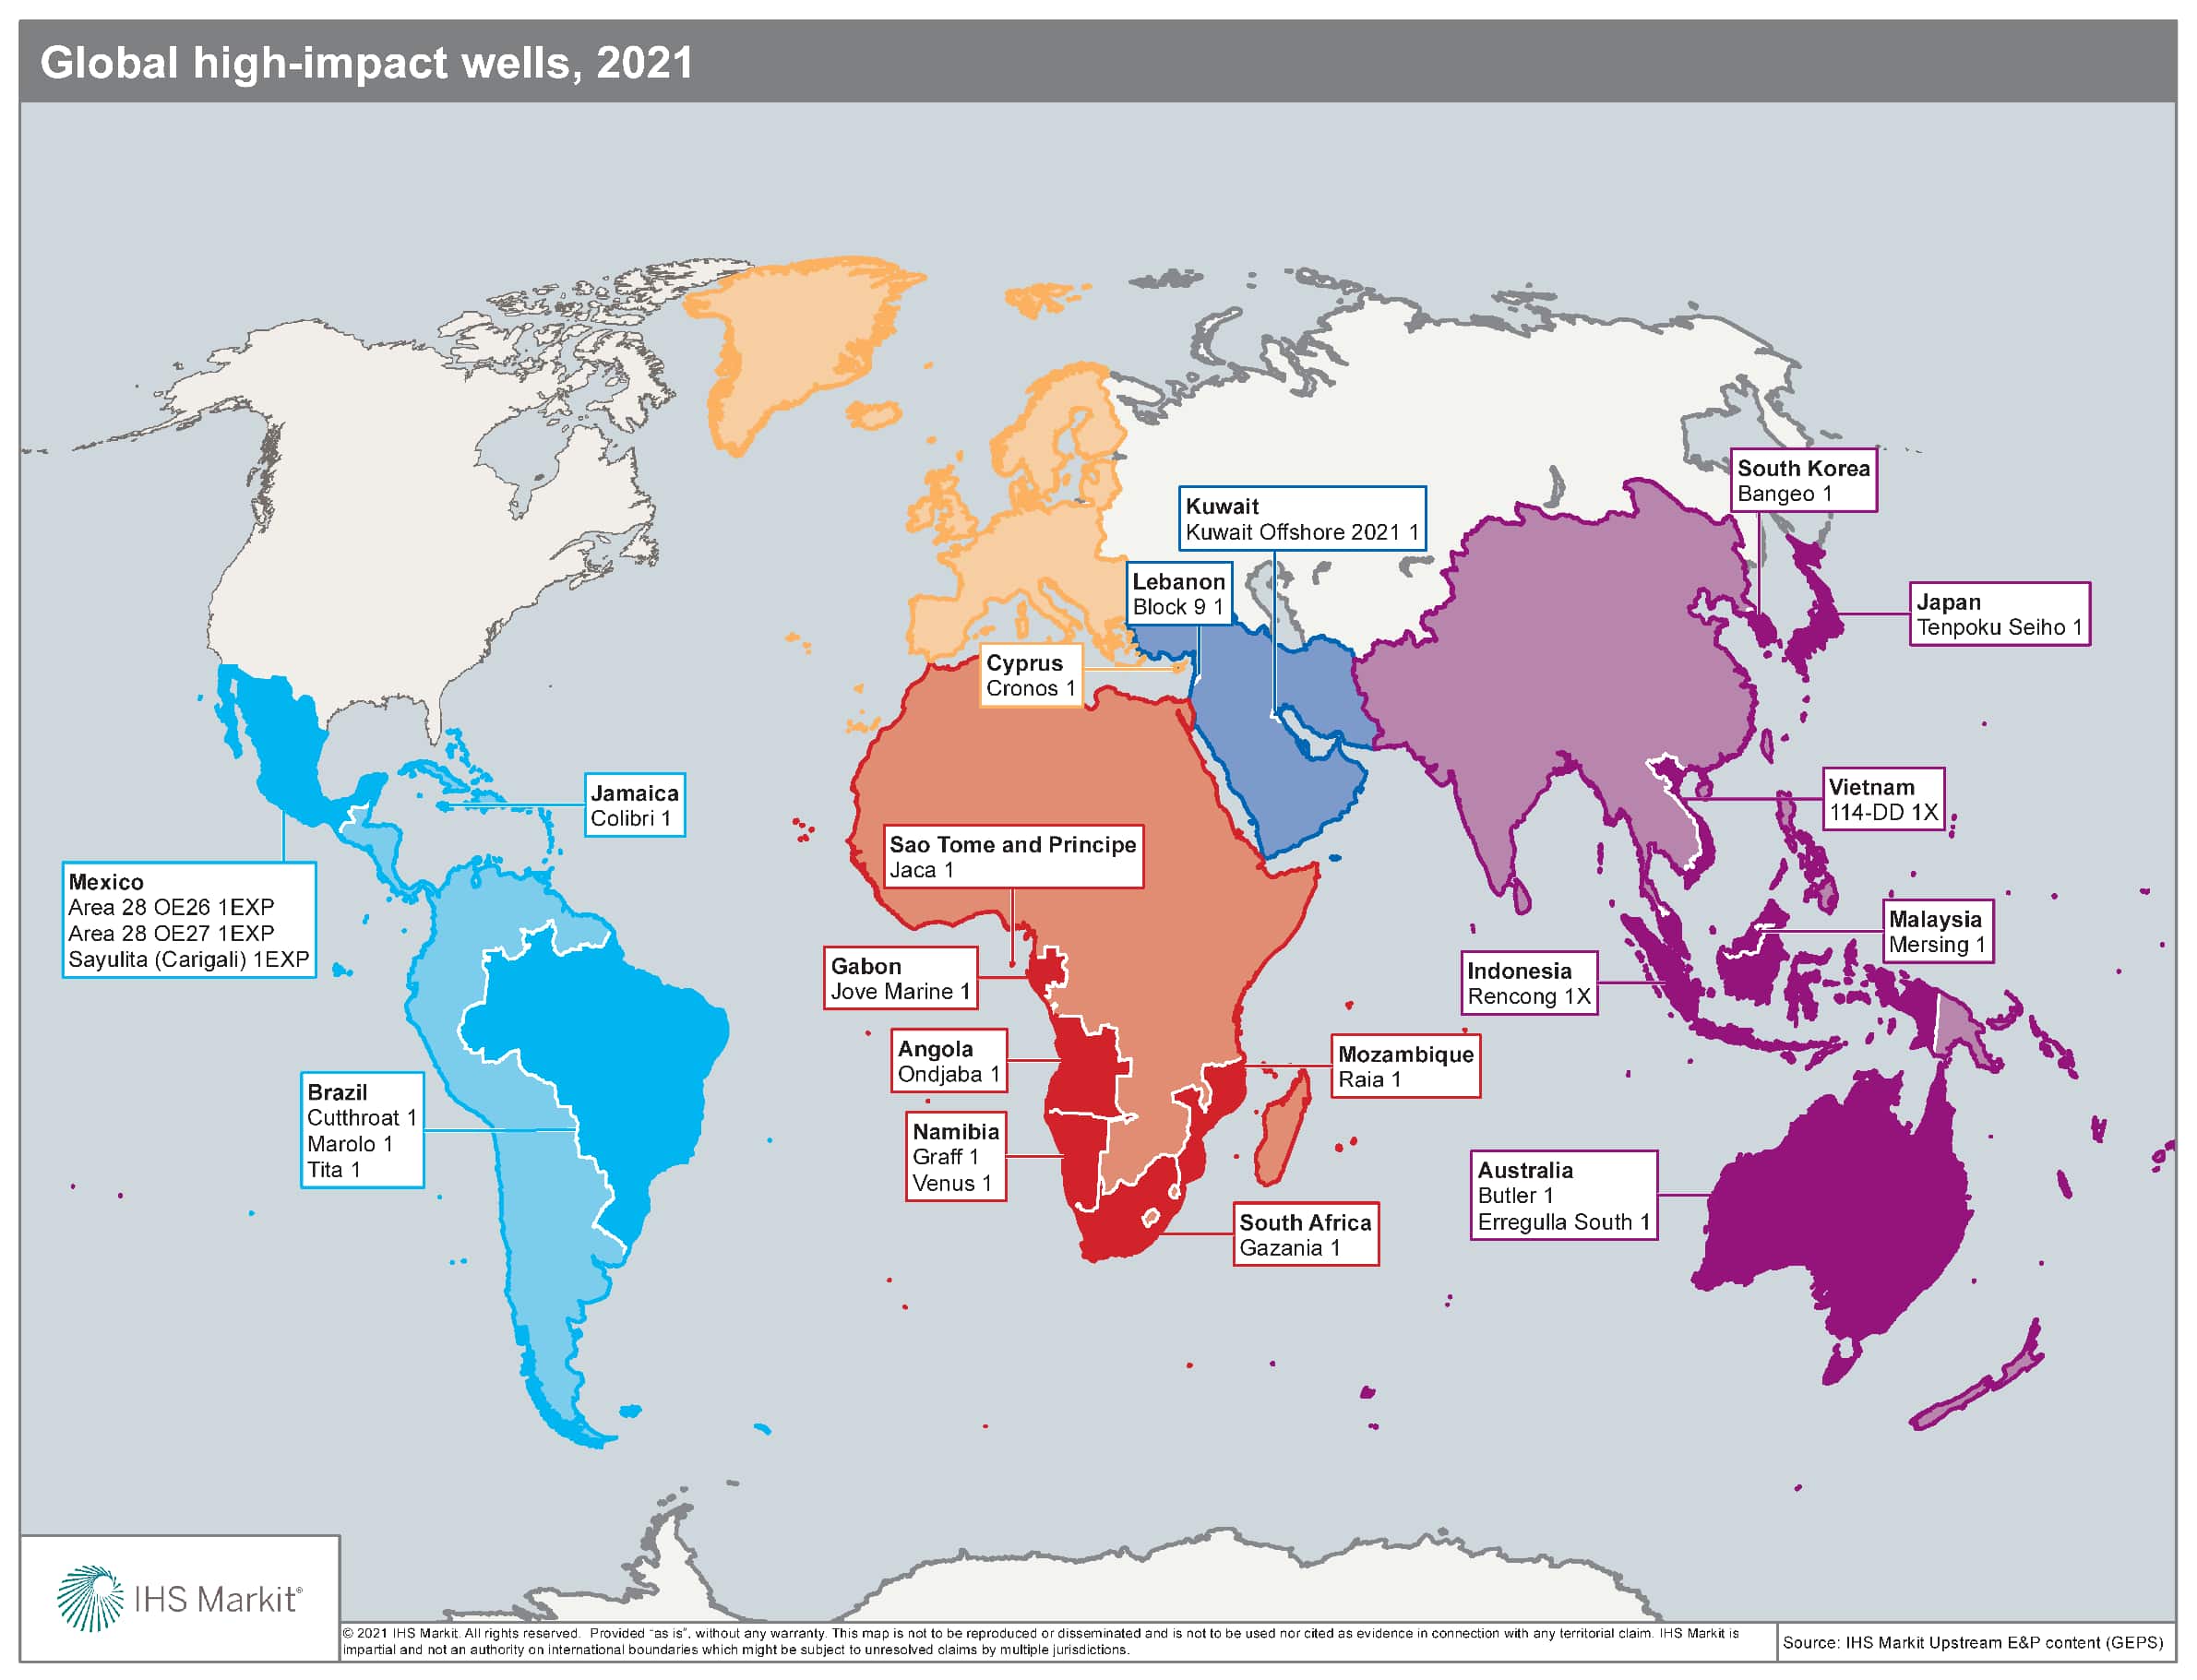 Global high-impact wells 2021